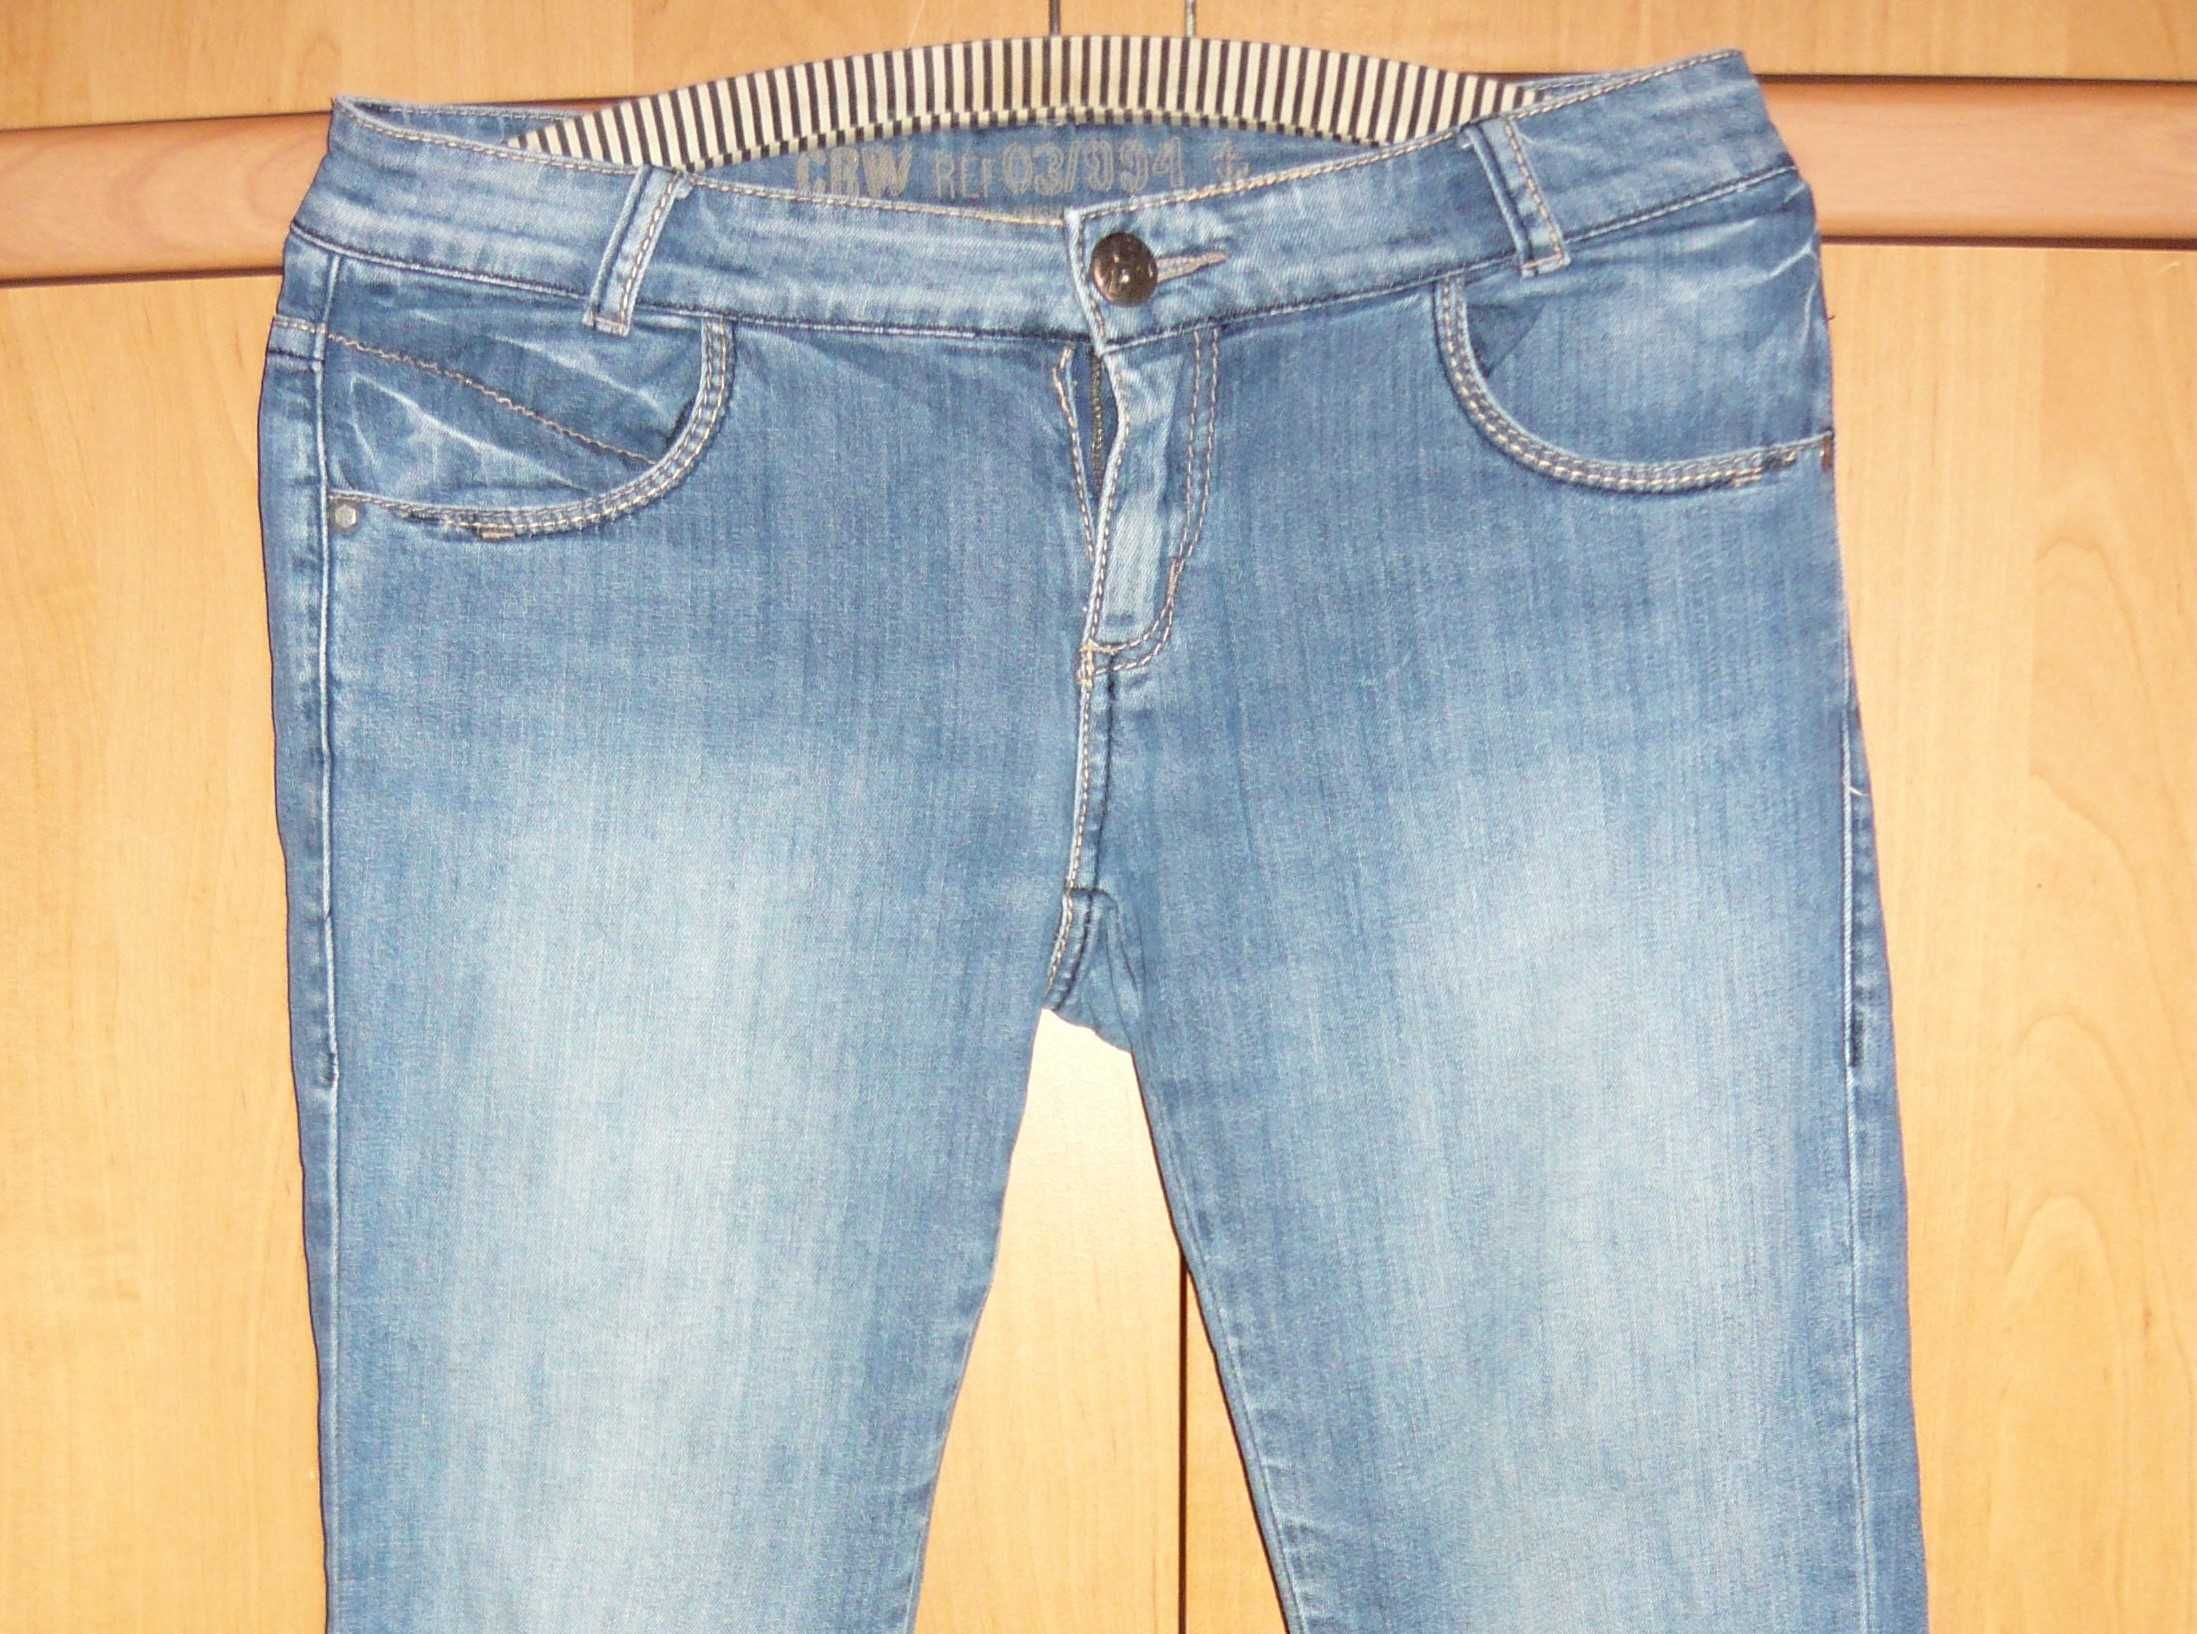 Spodnie Jeansowe CRW fabrycznie przecierane ref 03/994 r.27 M